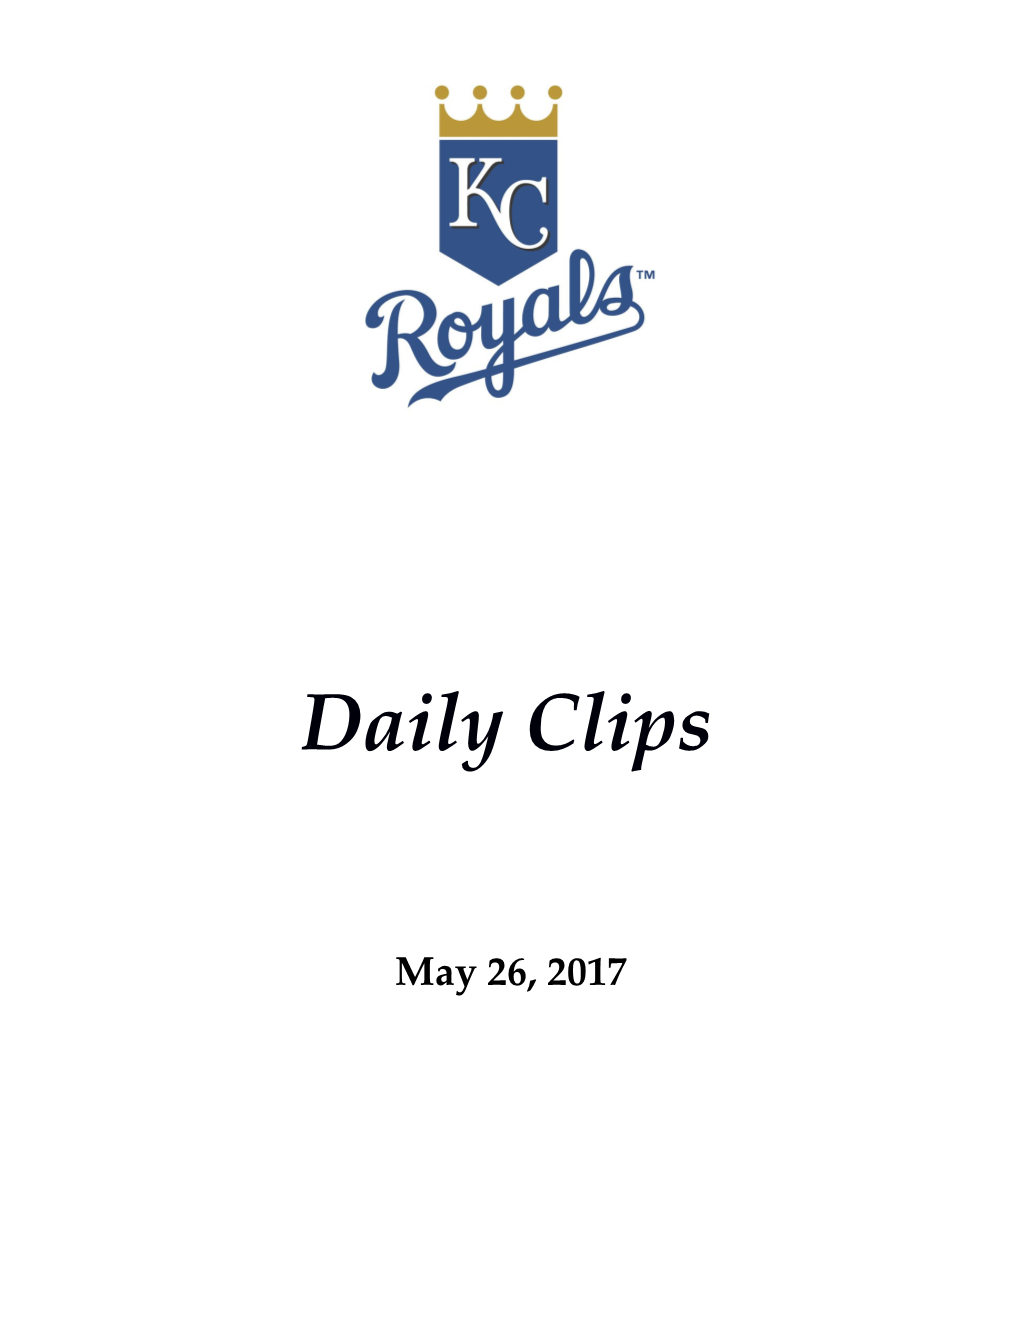 Thursday's Royals-Yanks Matchup Postponed